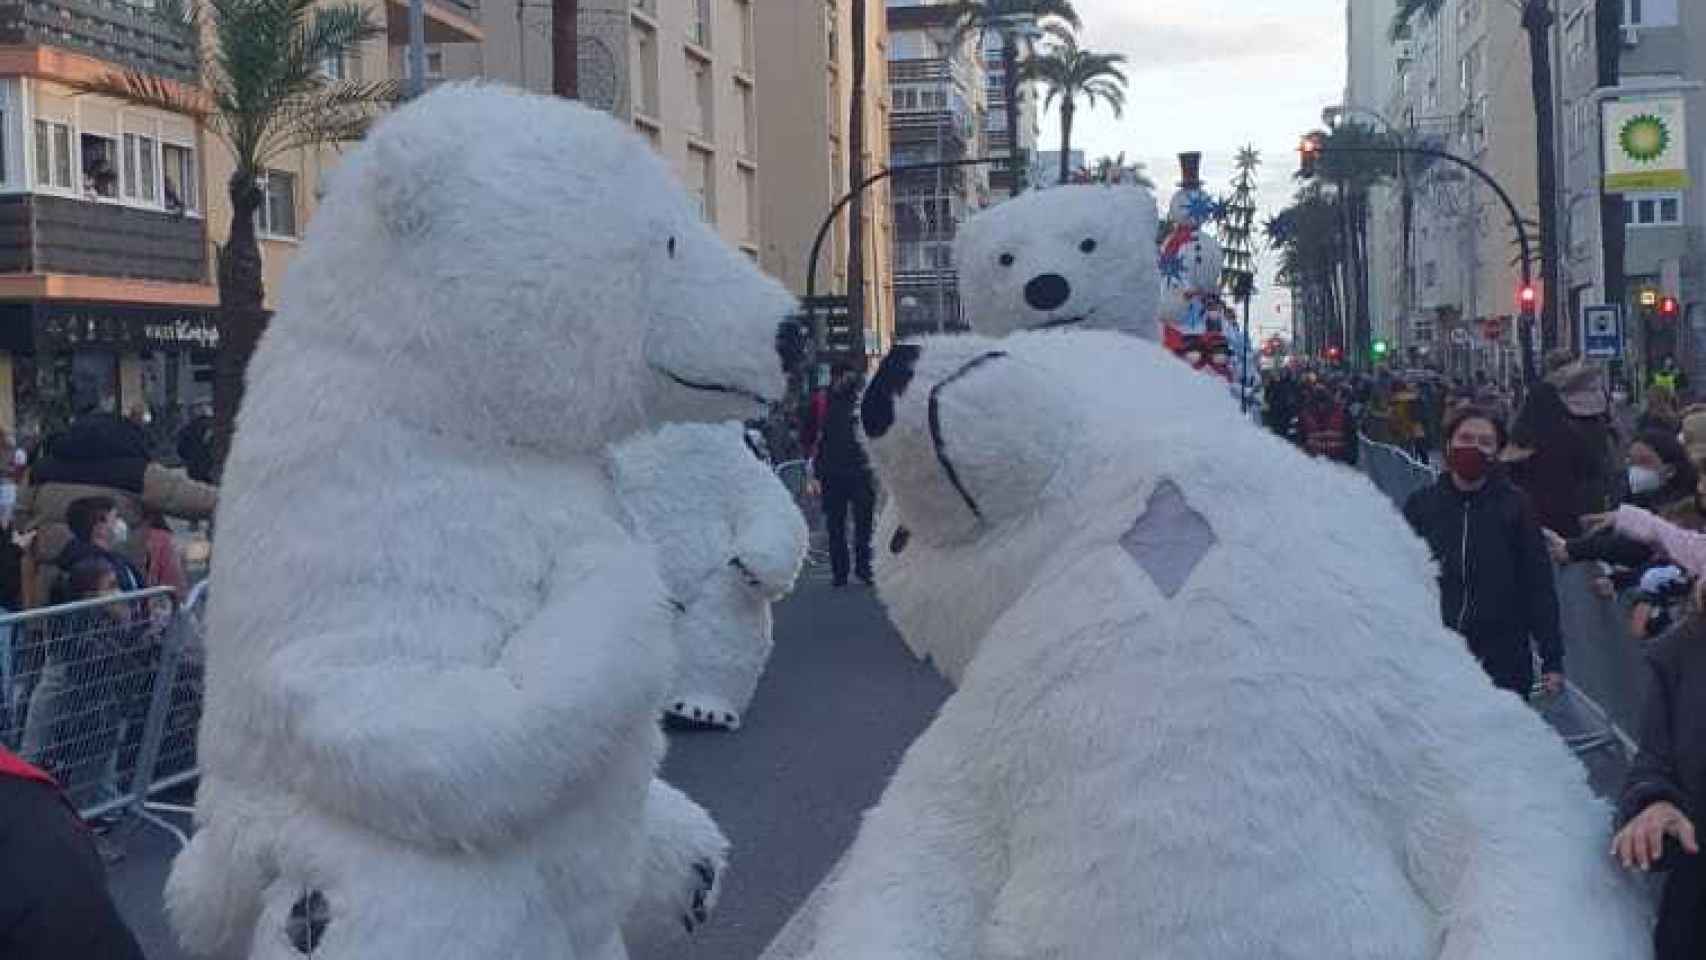 La imagen que enviaron avisando de que algo no estaba yendo bien con el oso en la Cabalgata de Cádiz.